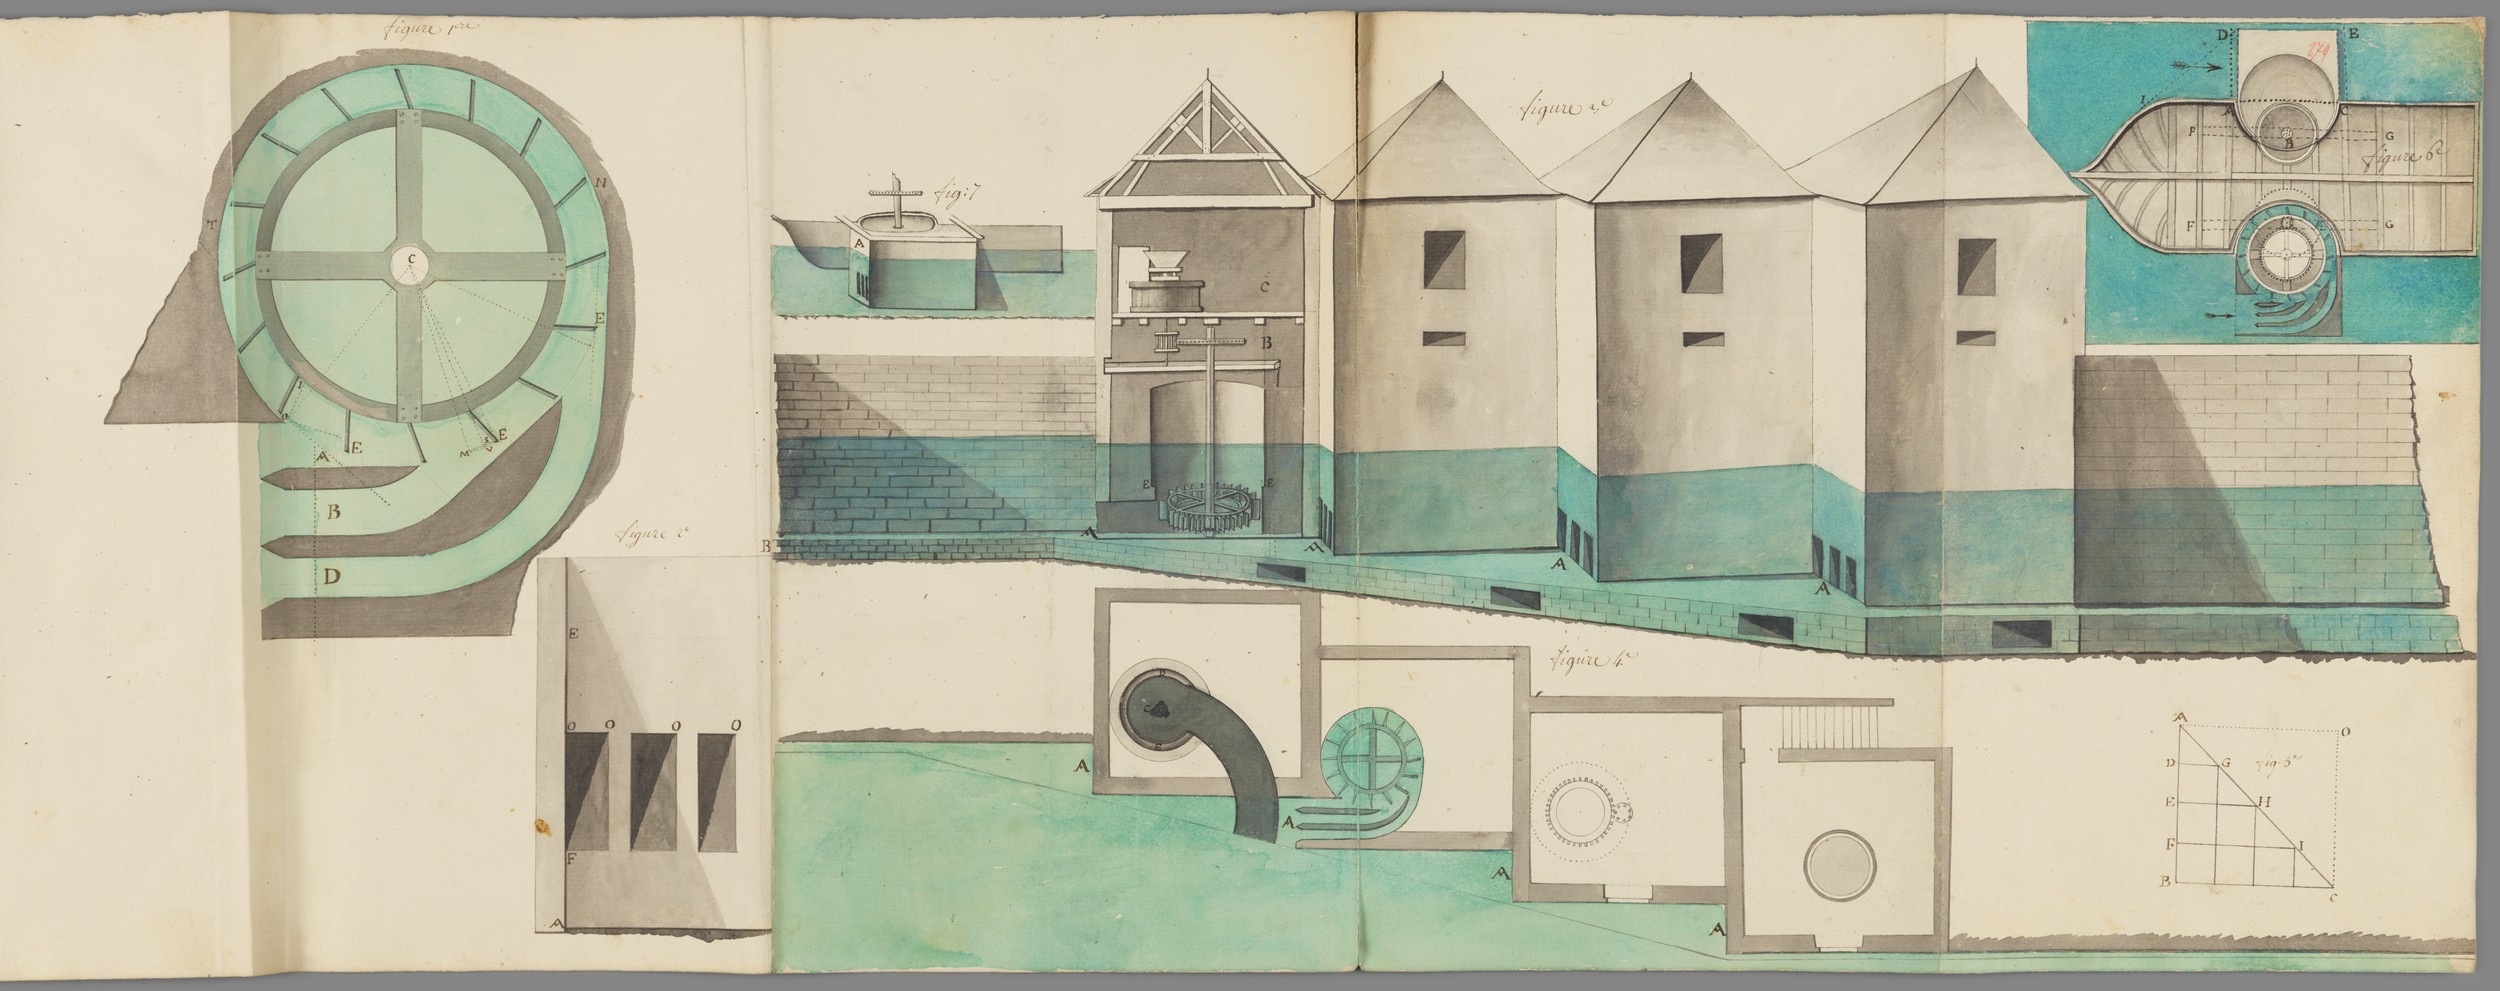 Concours sur le perfectionnement des moulins : plan manuscrit couleur (1763, Ms 174, coll. Académie SBLA de Lyon)